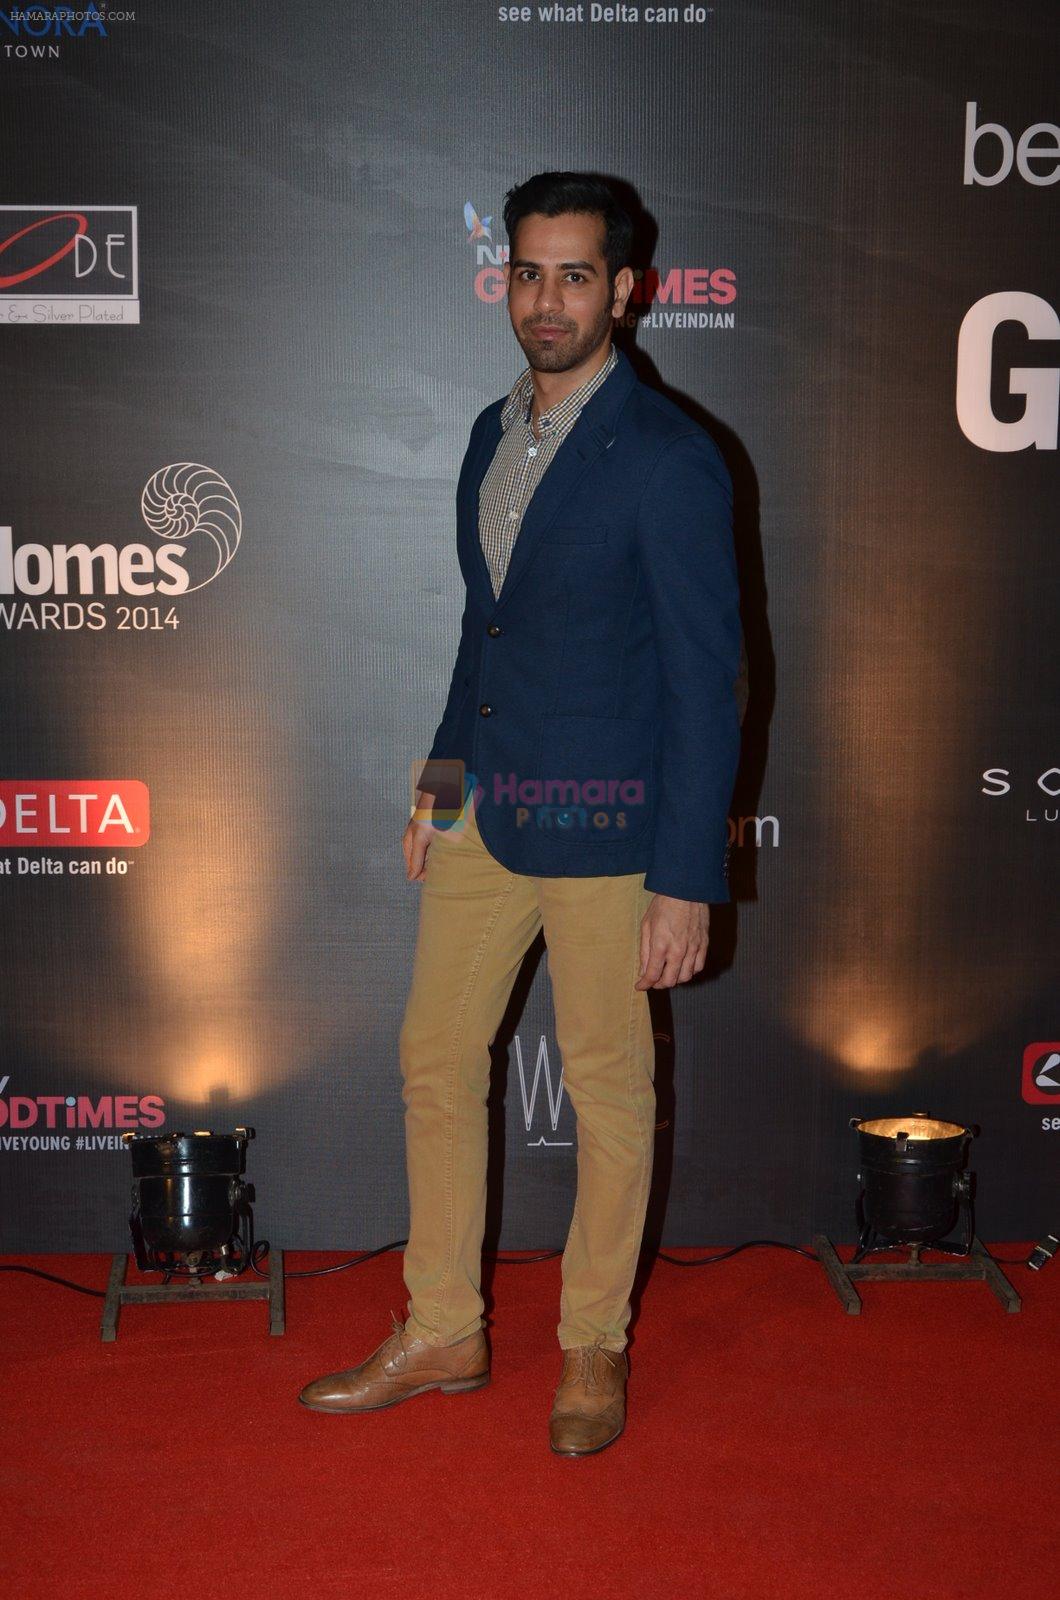 at Good Homes Awards in Bandra, Mumbai on 21st Jan 2015